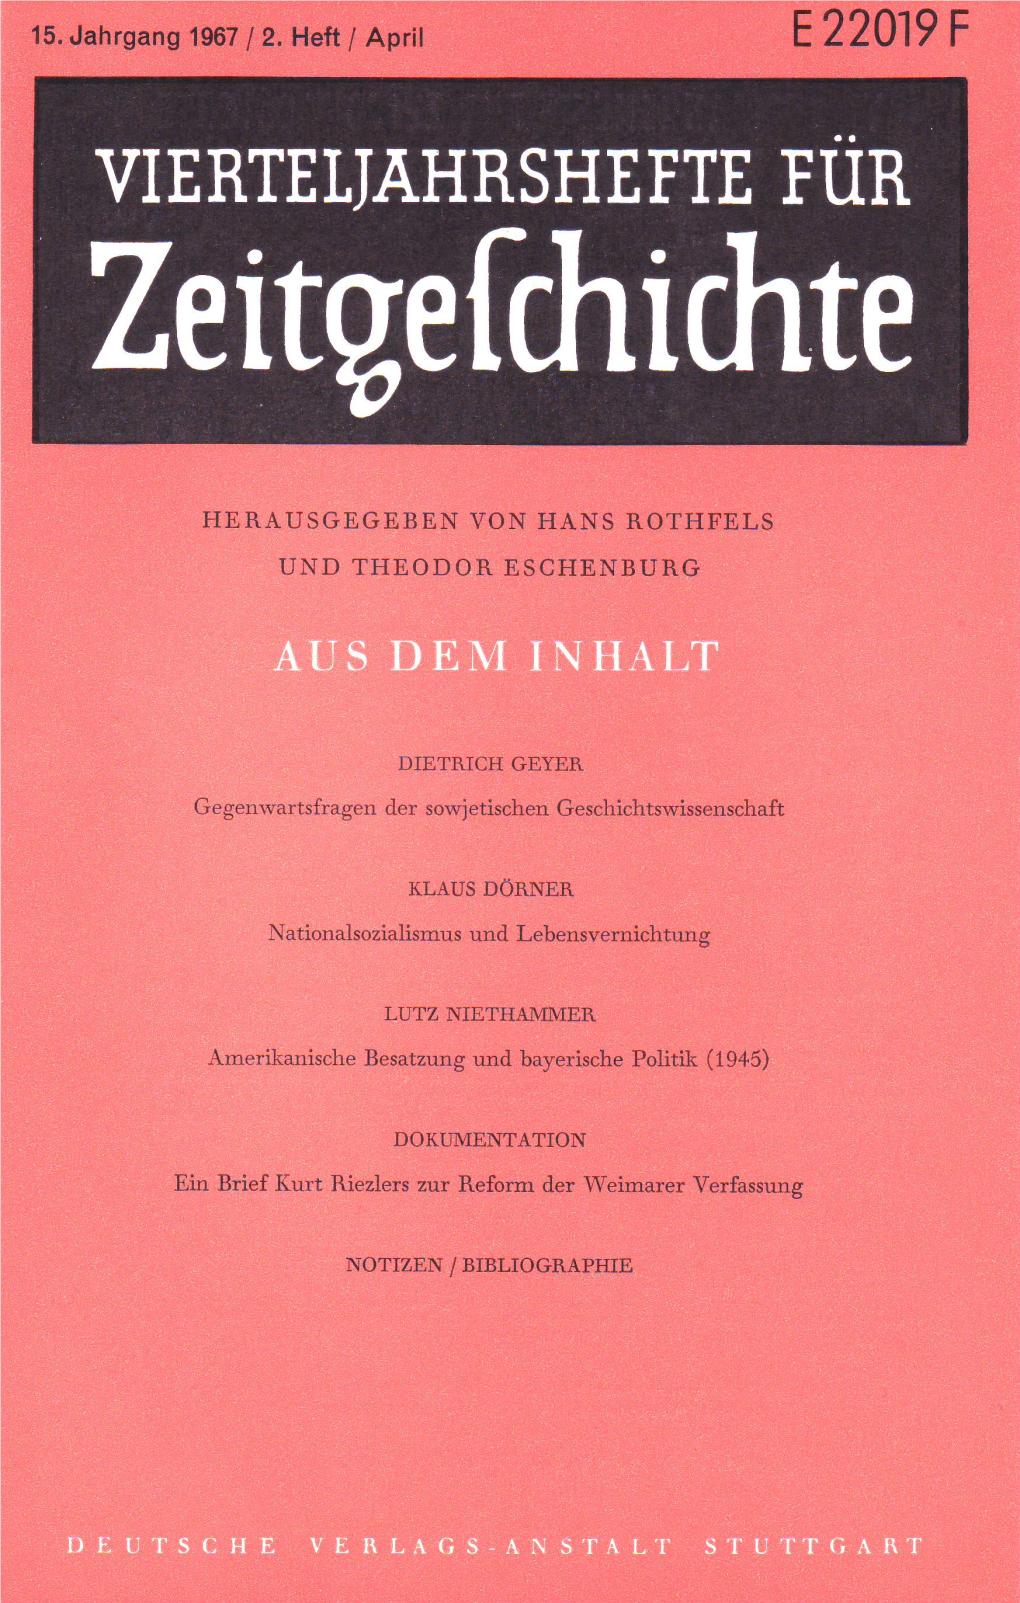 Heft 2 Der Historisch-Politischen Schrif­ Tenreihe Des Neuen Presseclubs München, München O